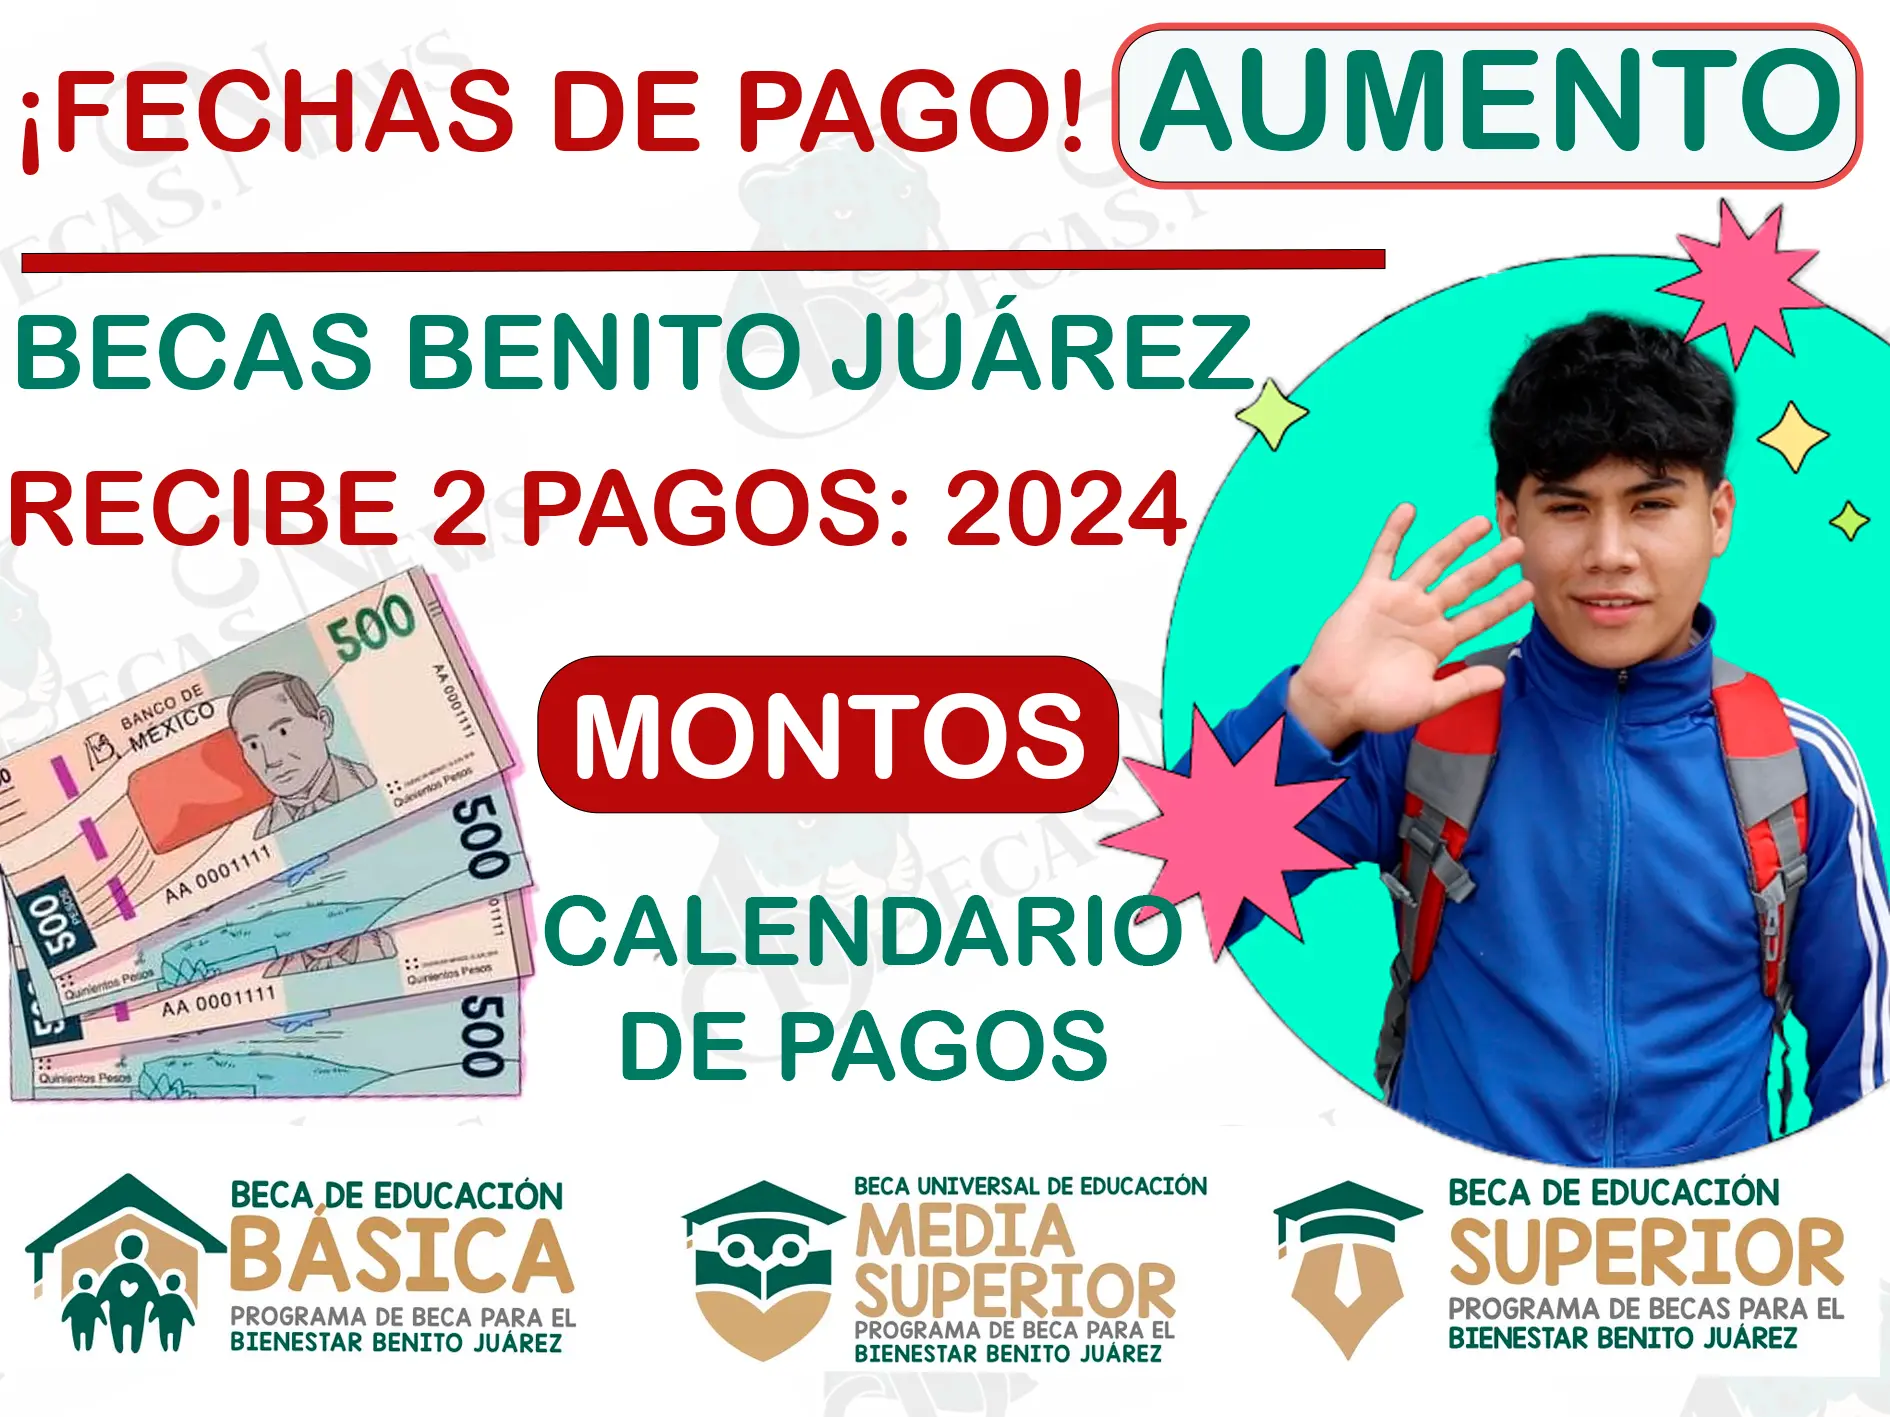 Becas Benito Juárez: Recibe 2 pagos con aumento este 2024